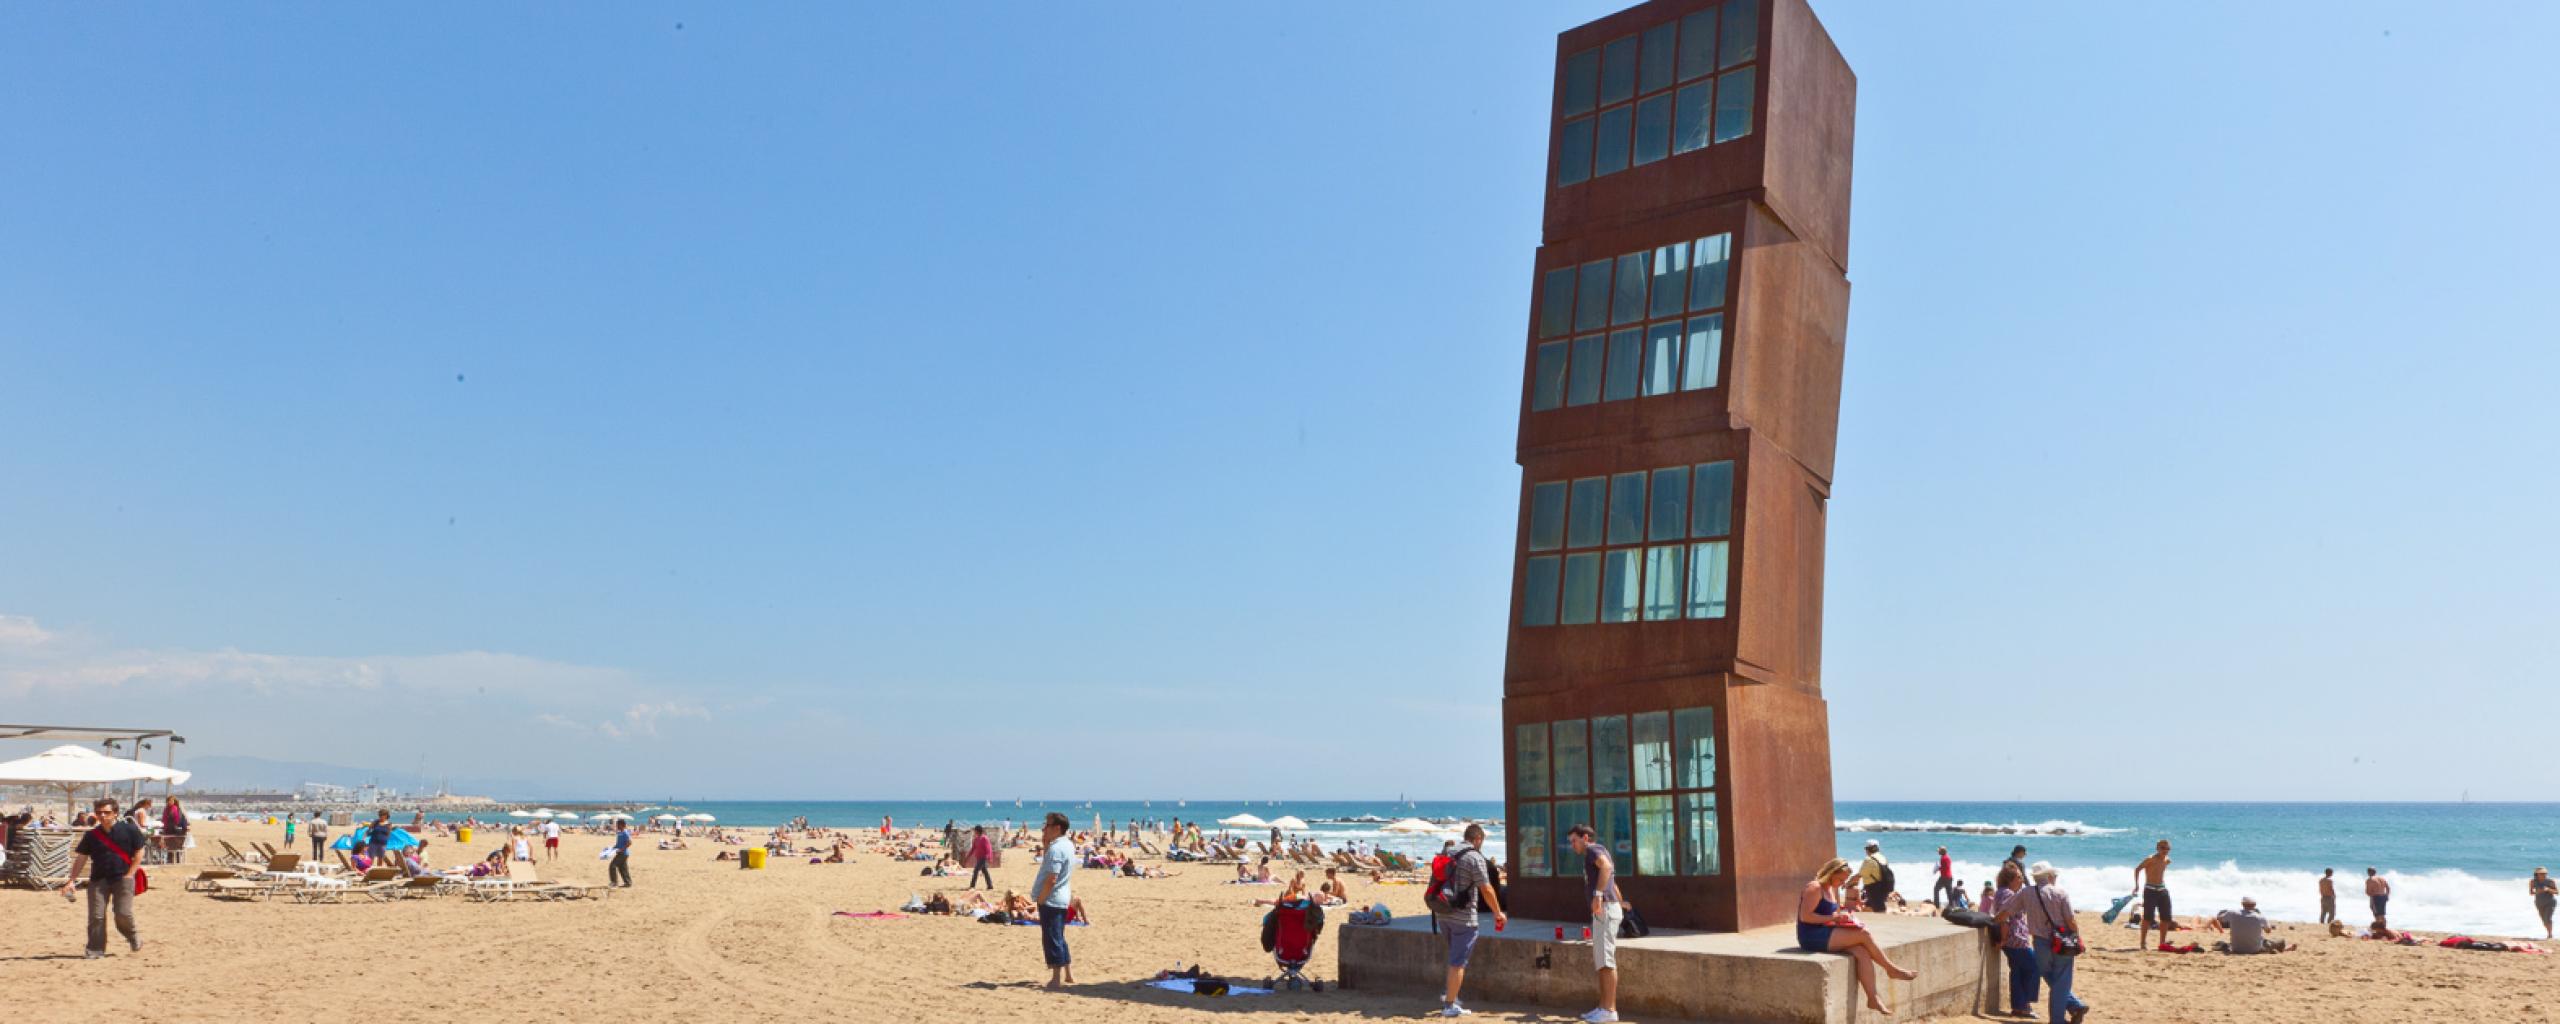 Ein Strandspaziergang - Kunst & Moderne Architektur inklusive